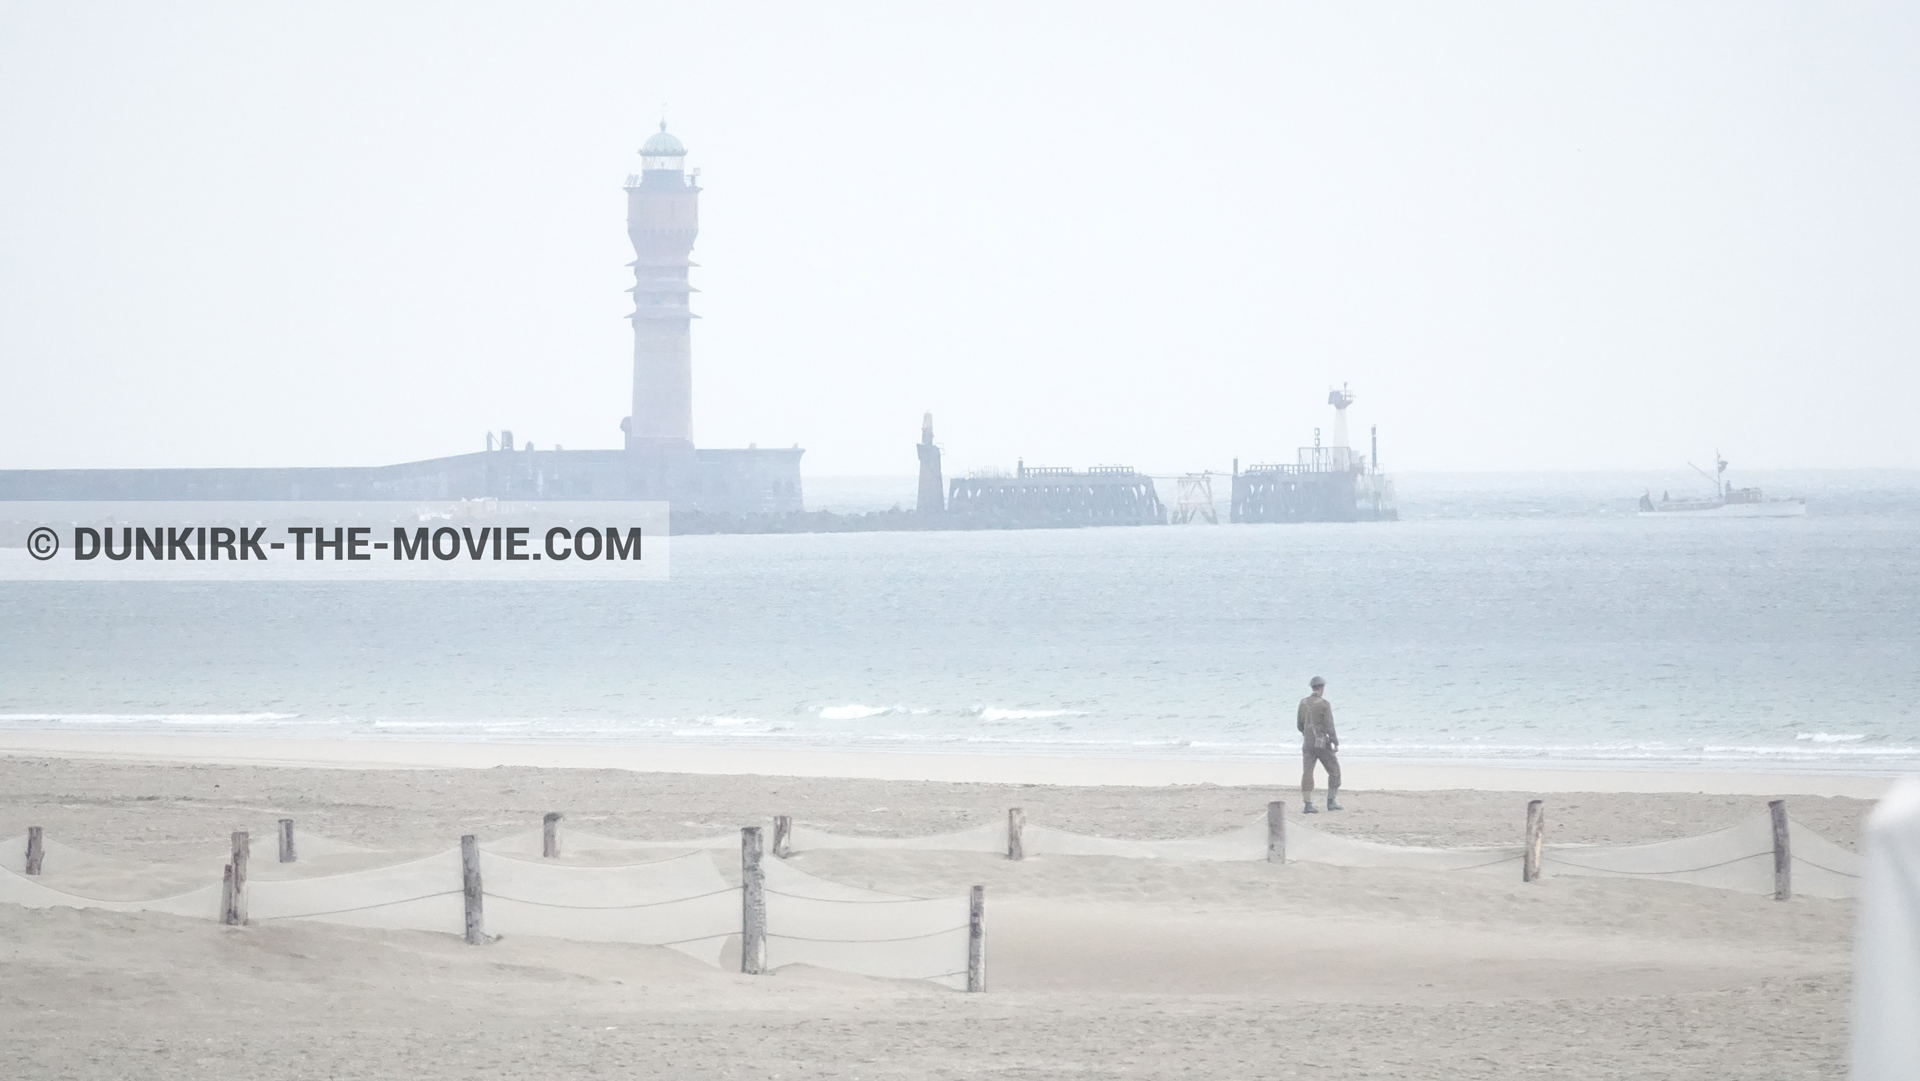 Fotos con extras, faro de Saint-Pol-sur-Mer, playa,  durante el rodaje de la película Dunkerque de Nolan